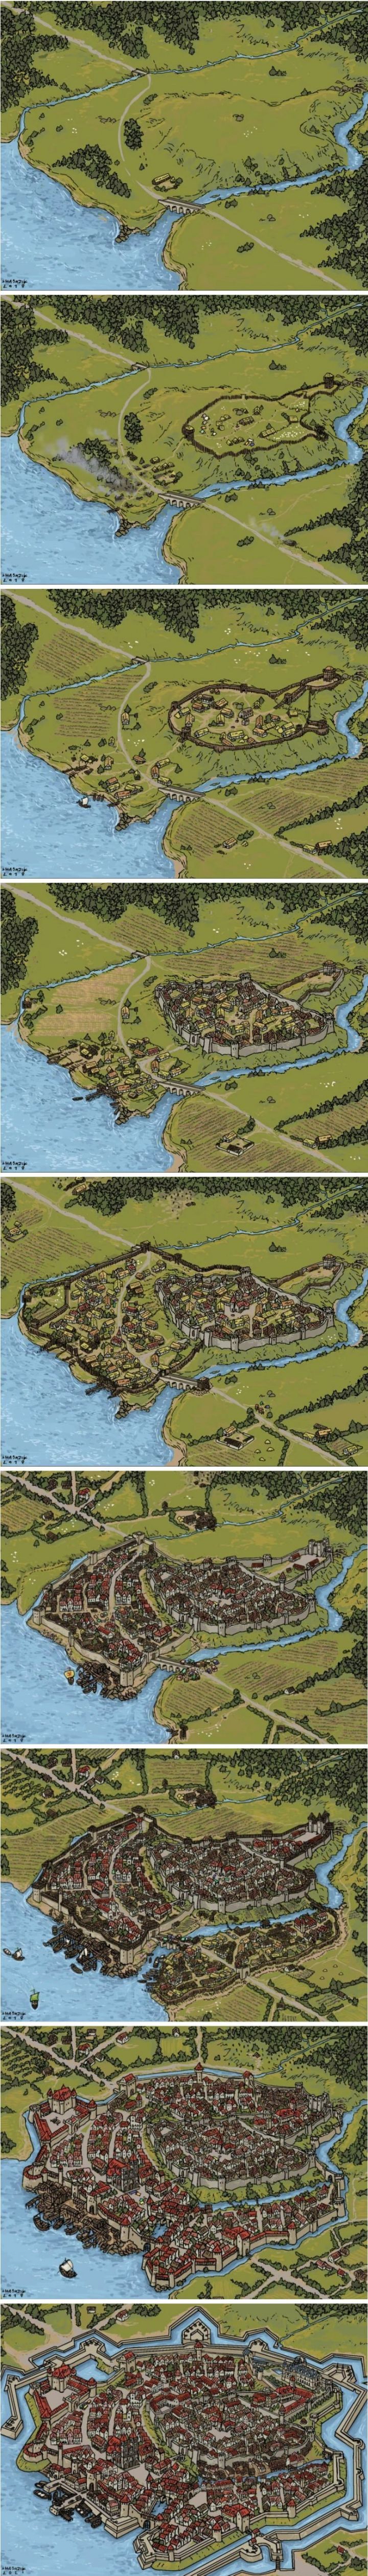 중세시대 마을 발전 과정